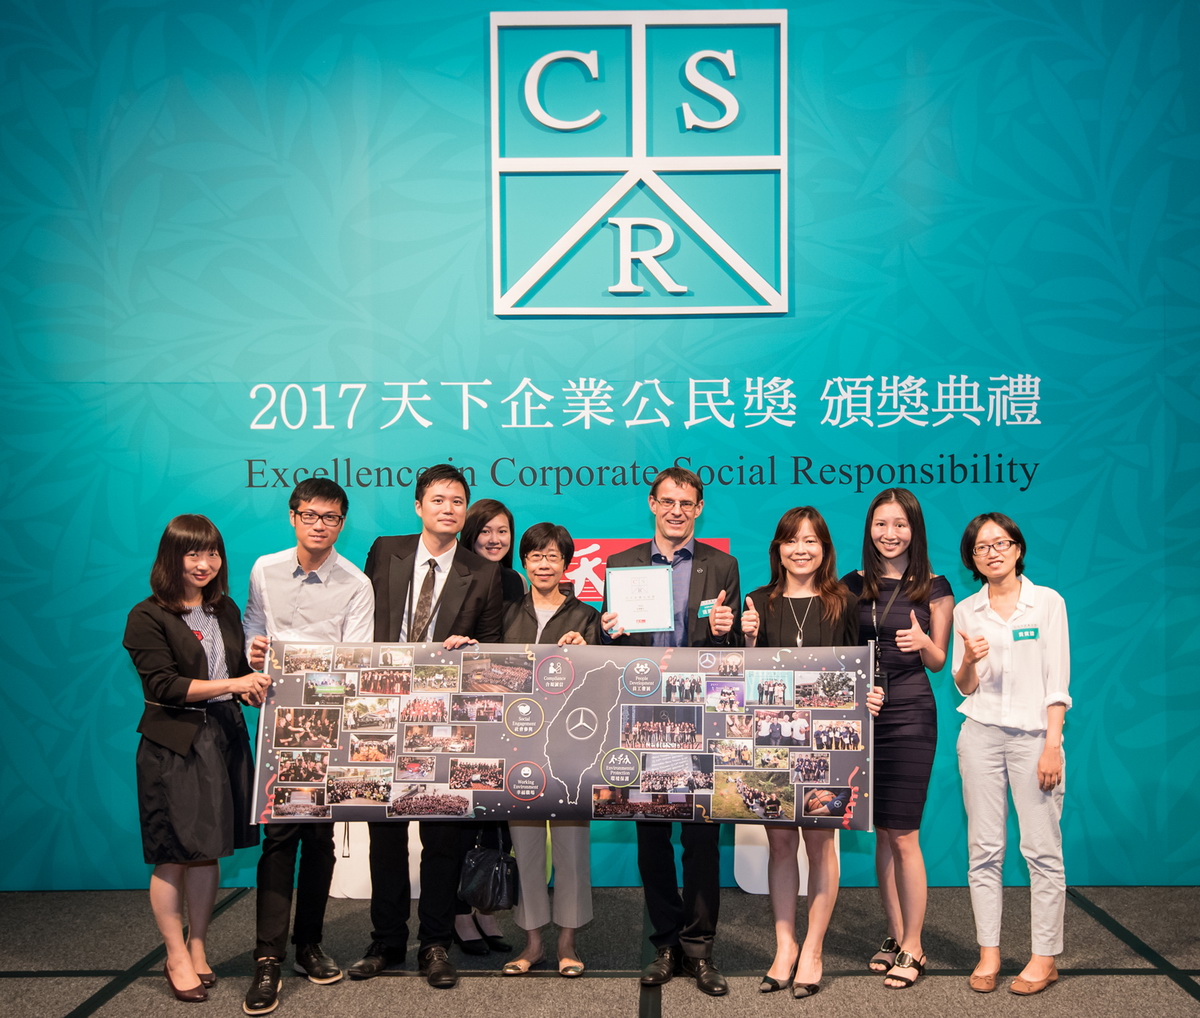 台灣賓士以「Synergy」原則整合企業價值鏈，資源重新分配，企業同仁、經銷商、車主、合作夥伴各司其職，成就因地制宜CSR專案計畫.jpg